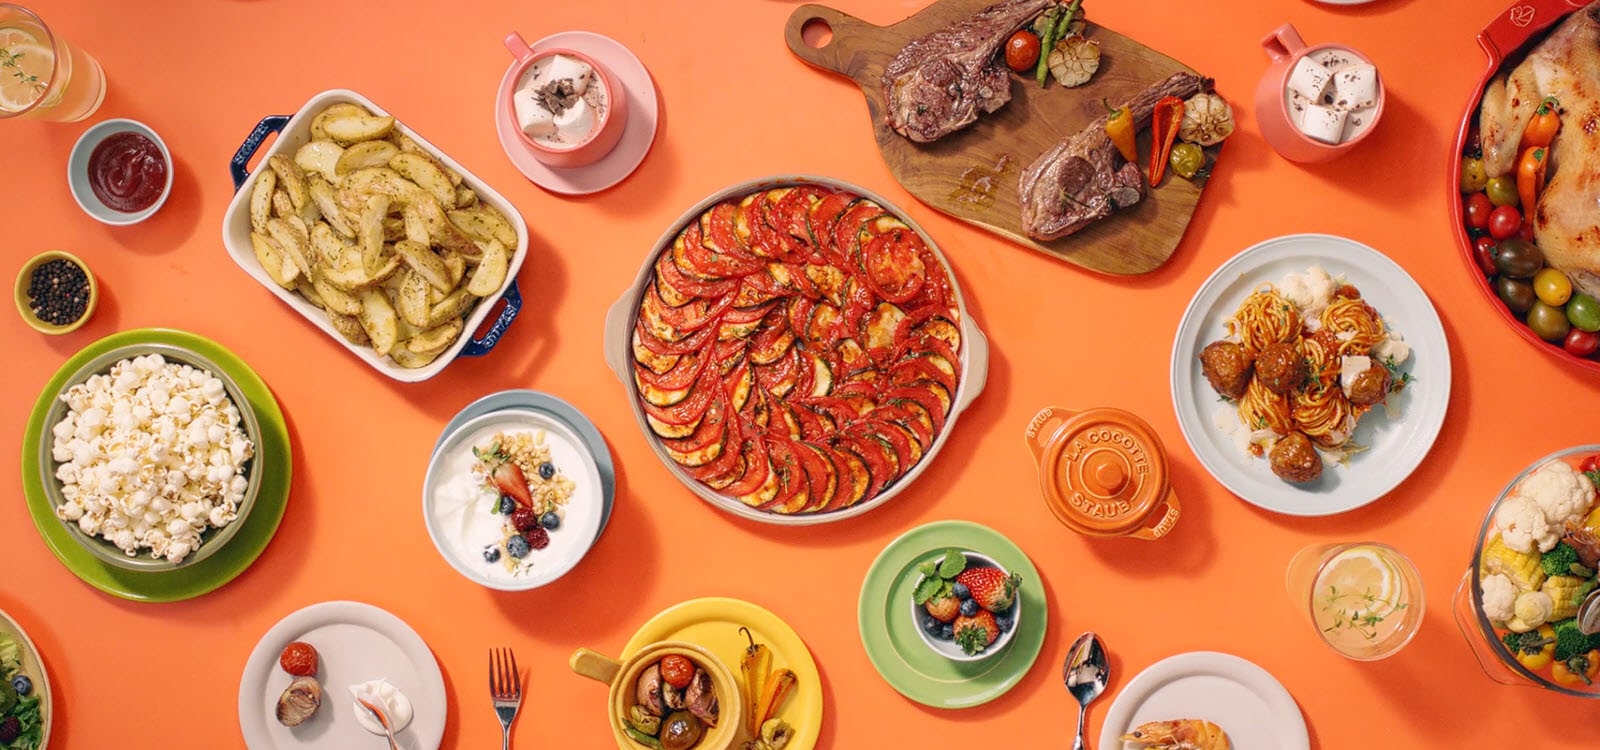 Il montre divers plats préparés sur la table avec LG Neochef.